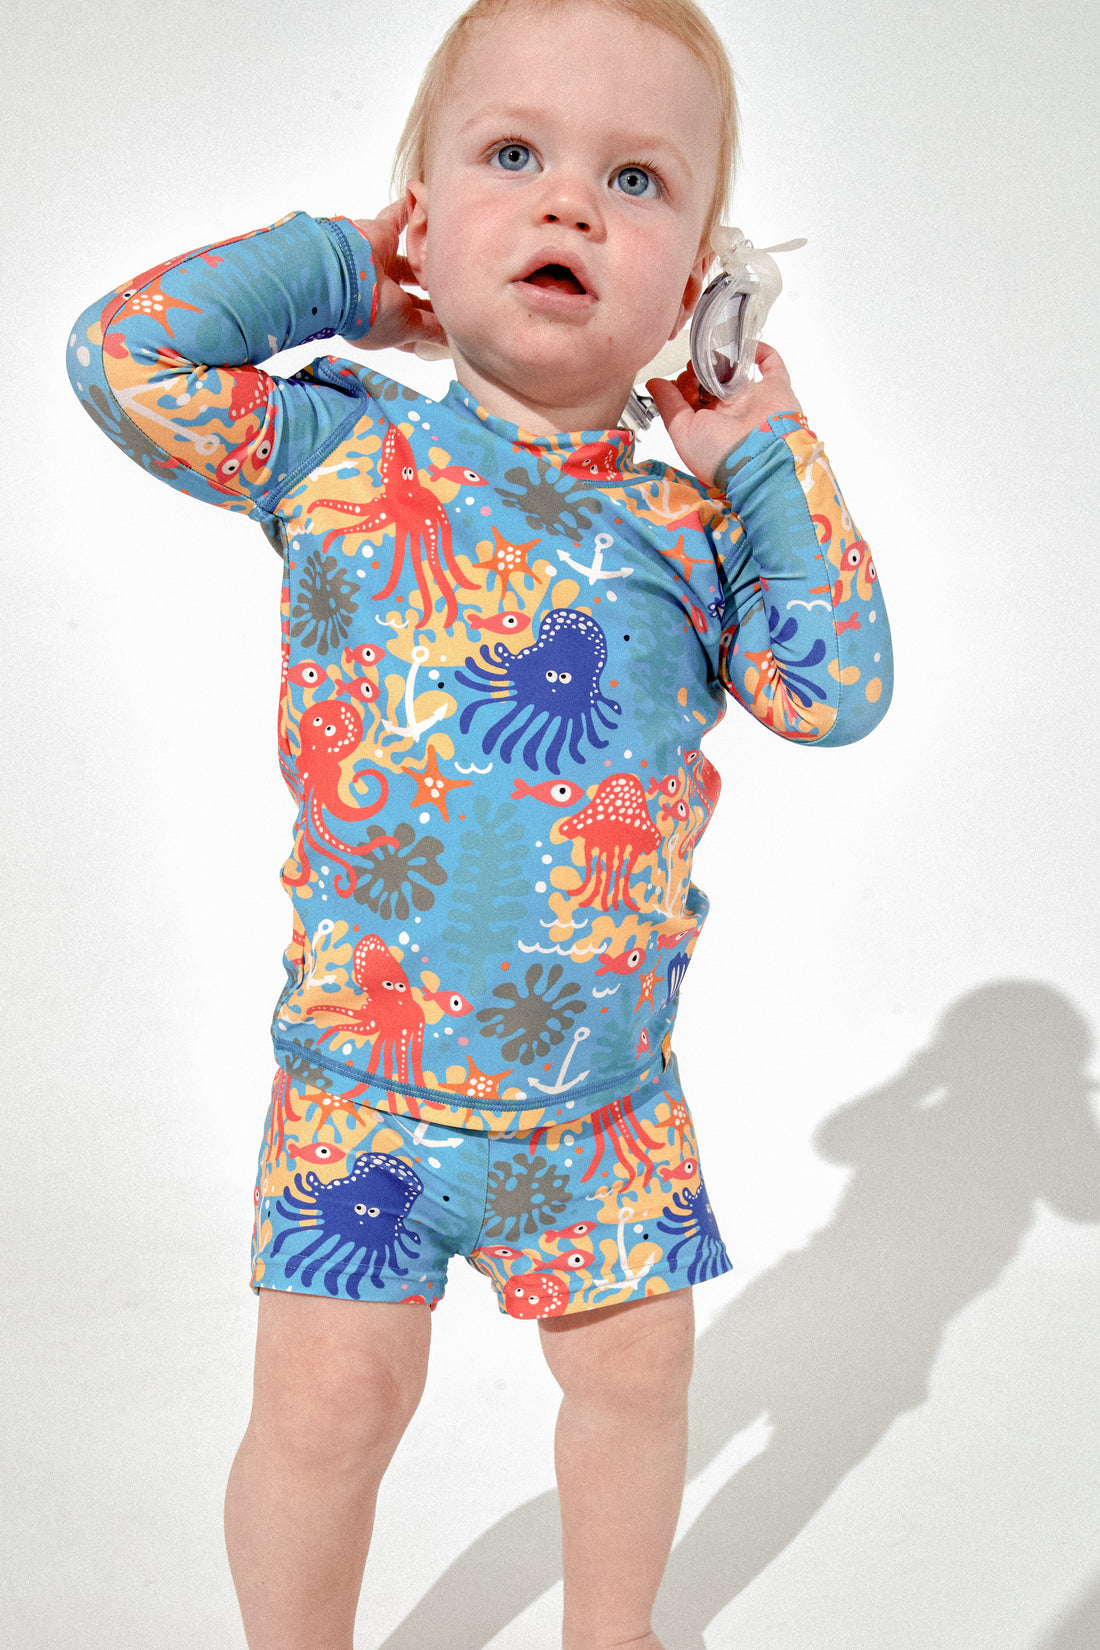 Kids Swimwear: Buy Children's Bathers & Swimsuits Online in Australia ...